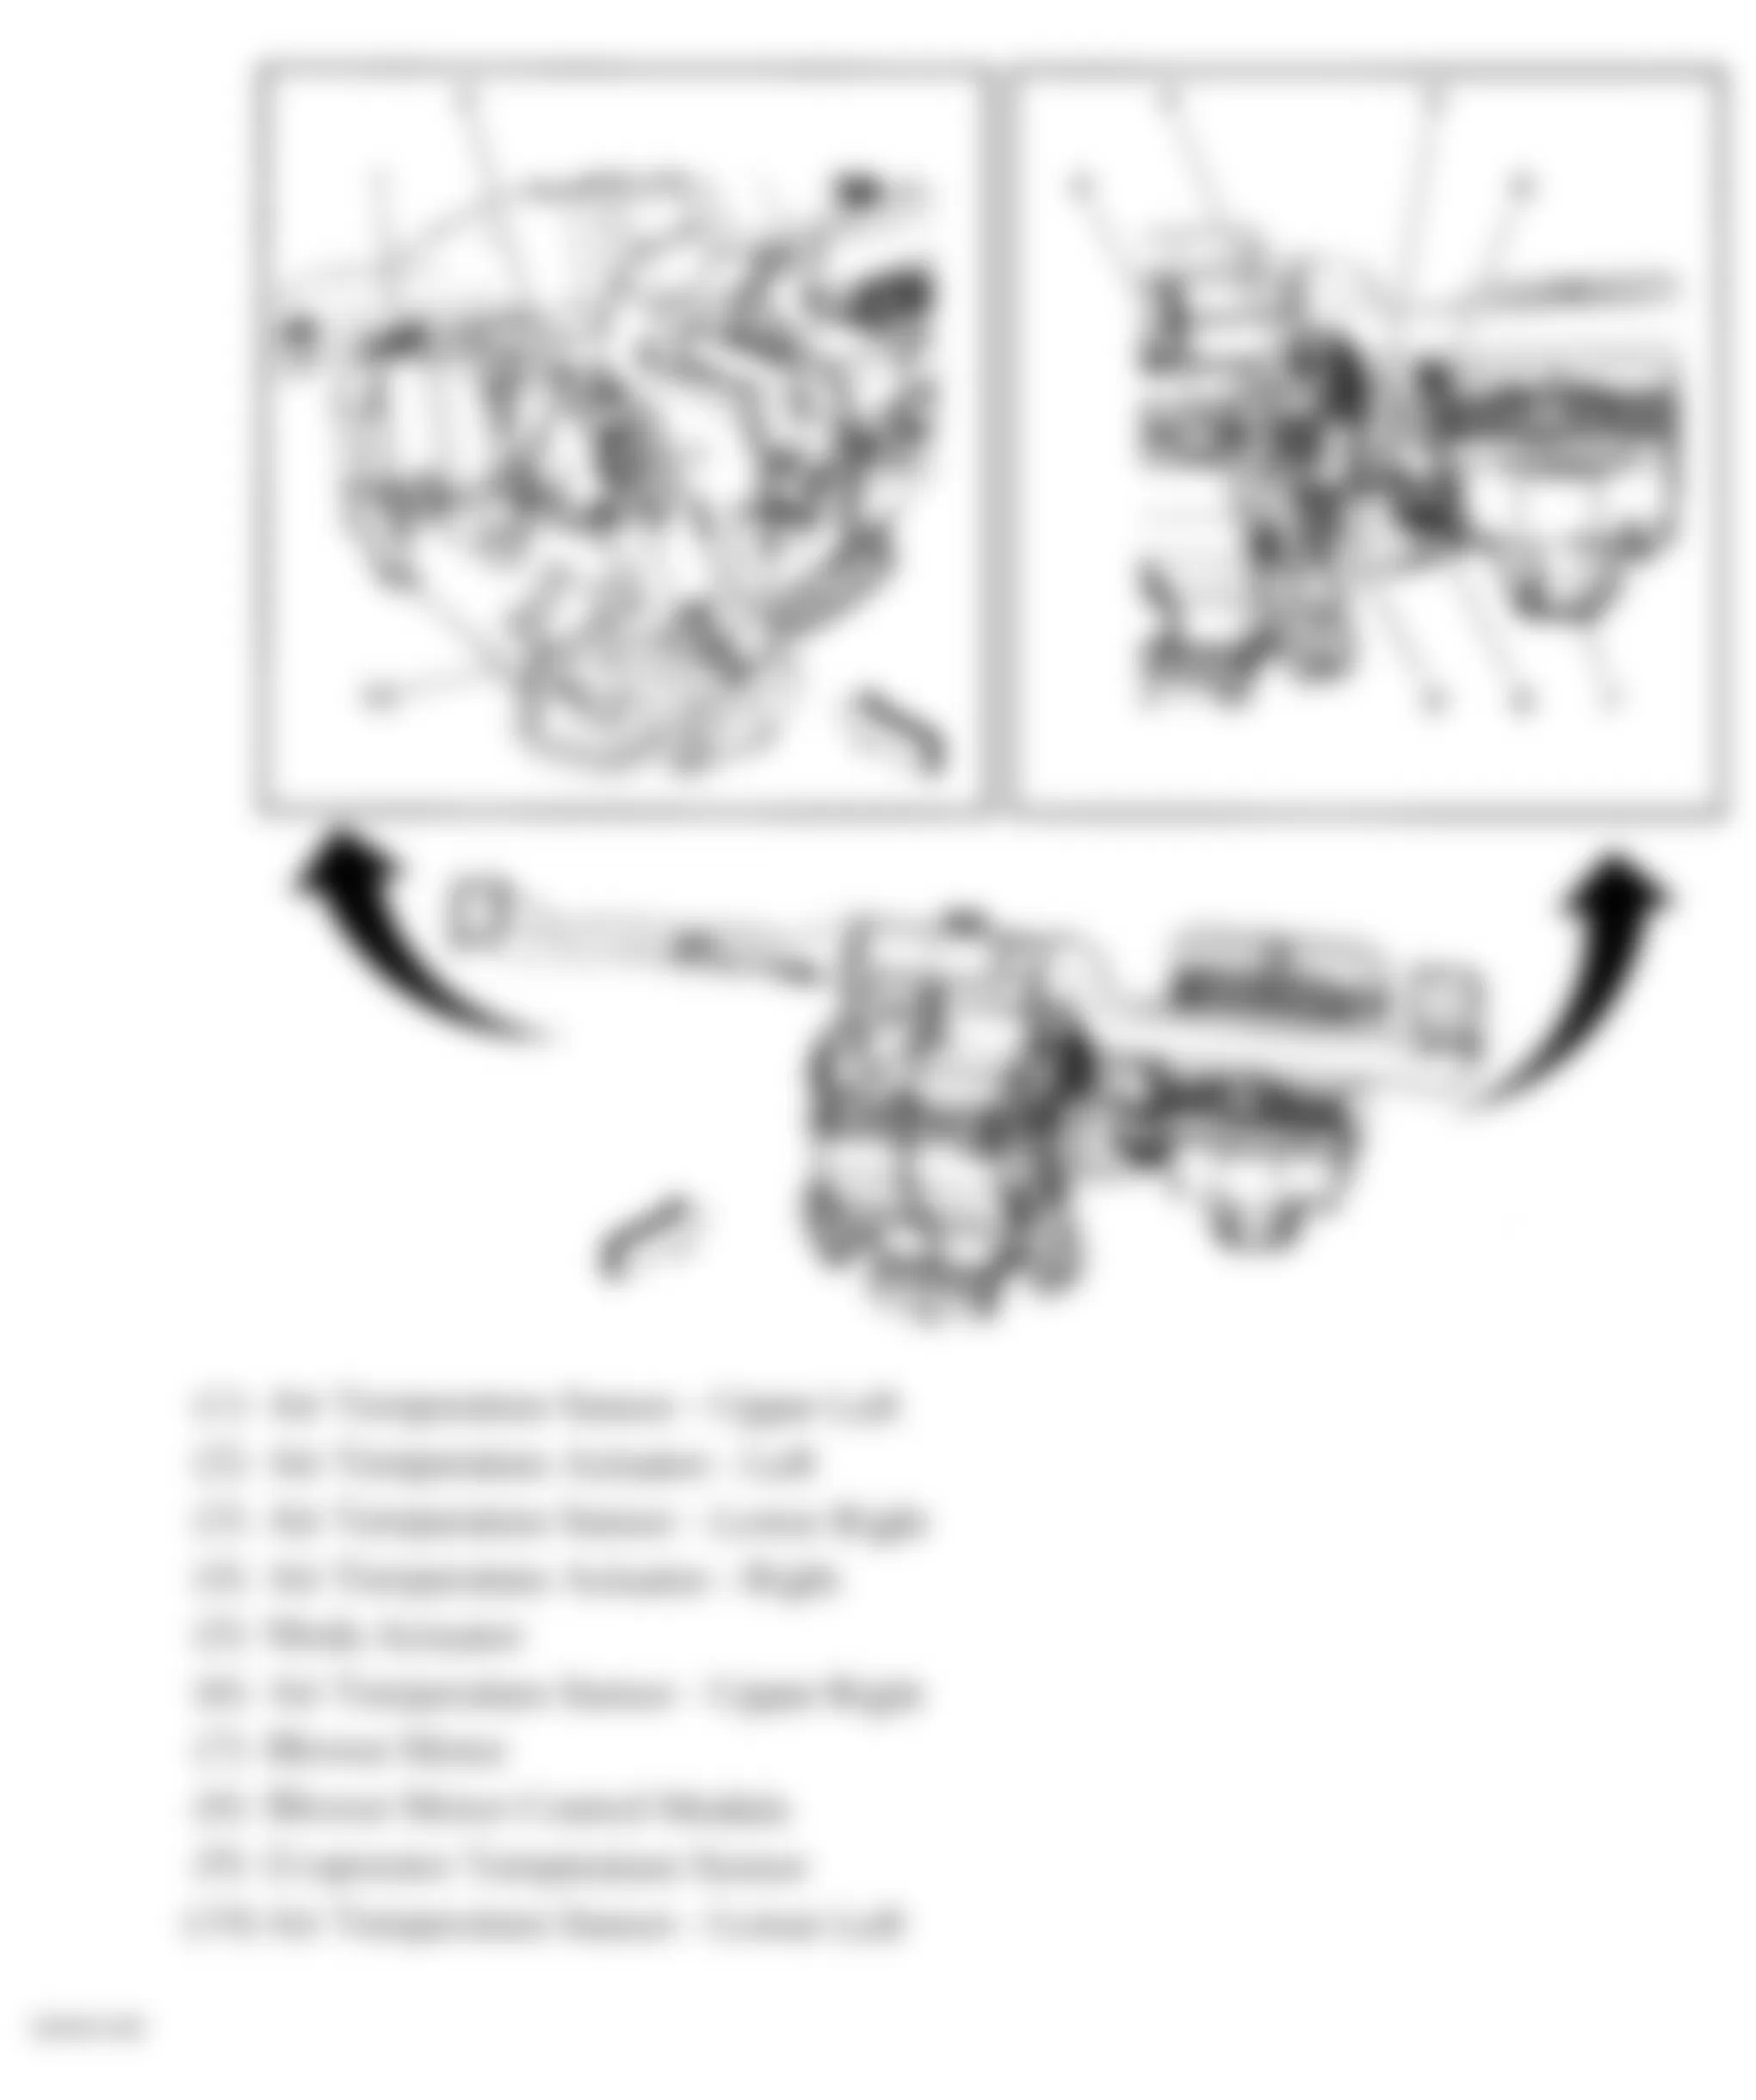 Buick Enclave CXL 2009 - Component Locations -  Front HVAC Module